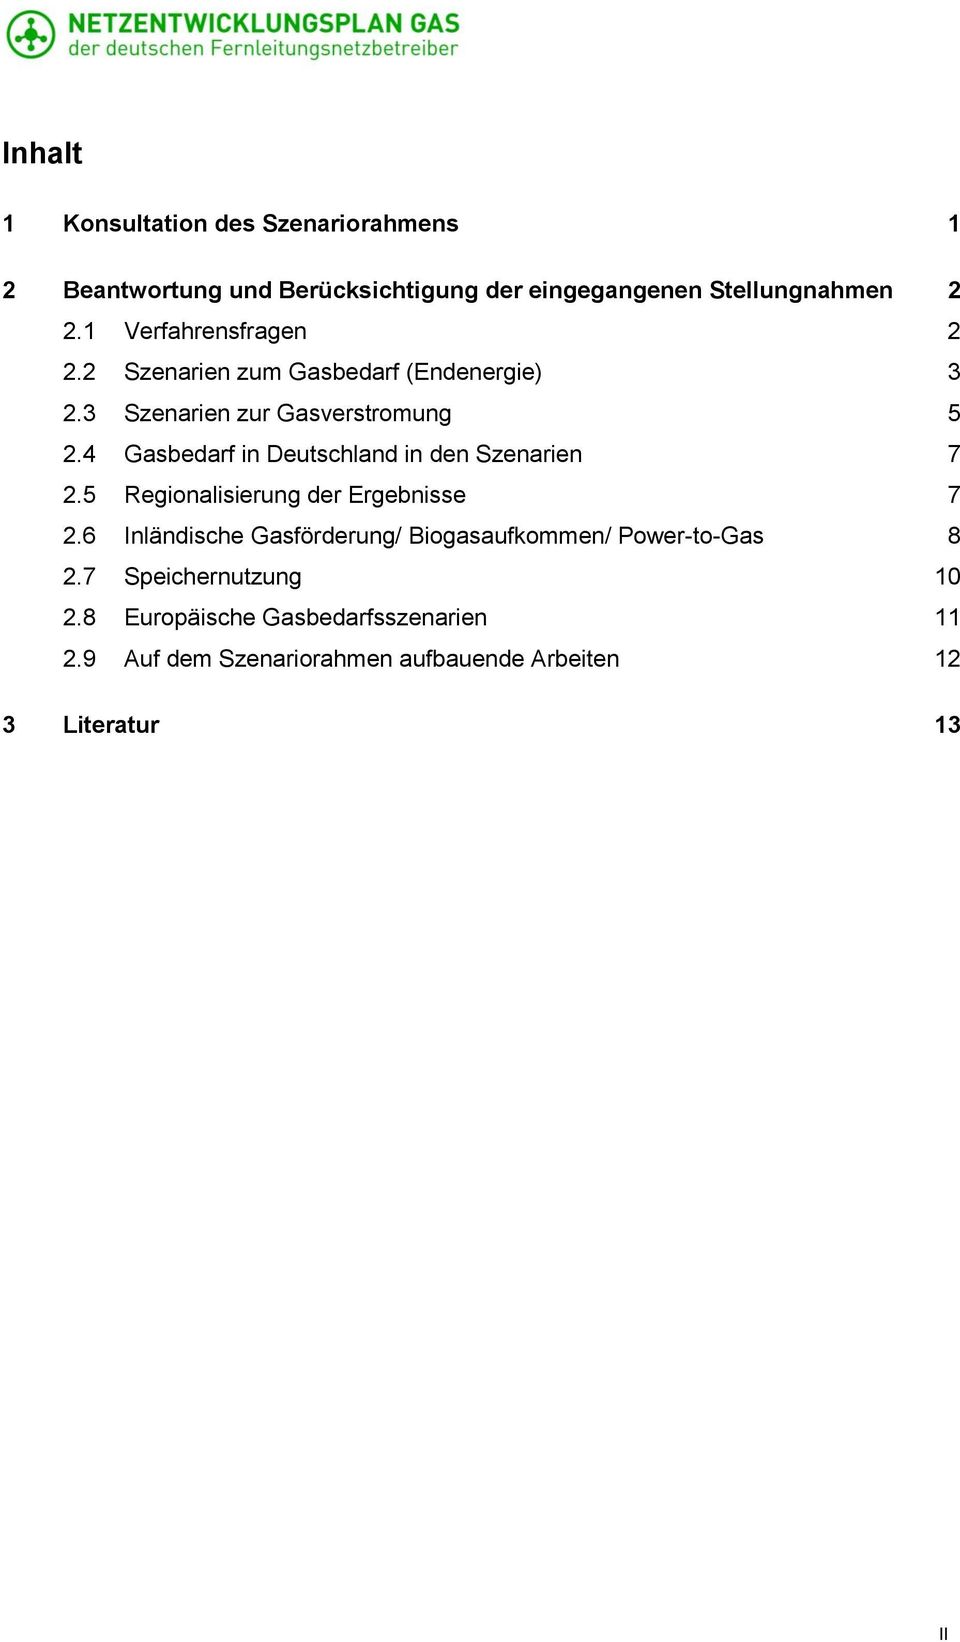 4 Gasbedarf in Deutschland in den Szenarien 7 2.5 Regionalisierung der Ergebnisse 7 2.